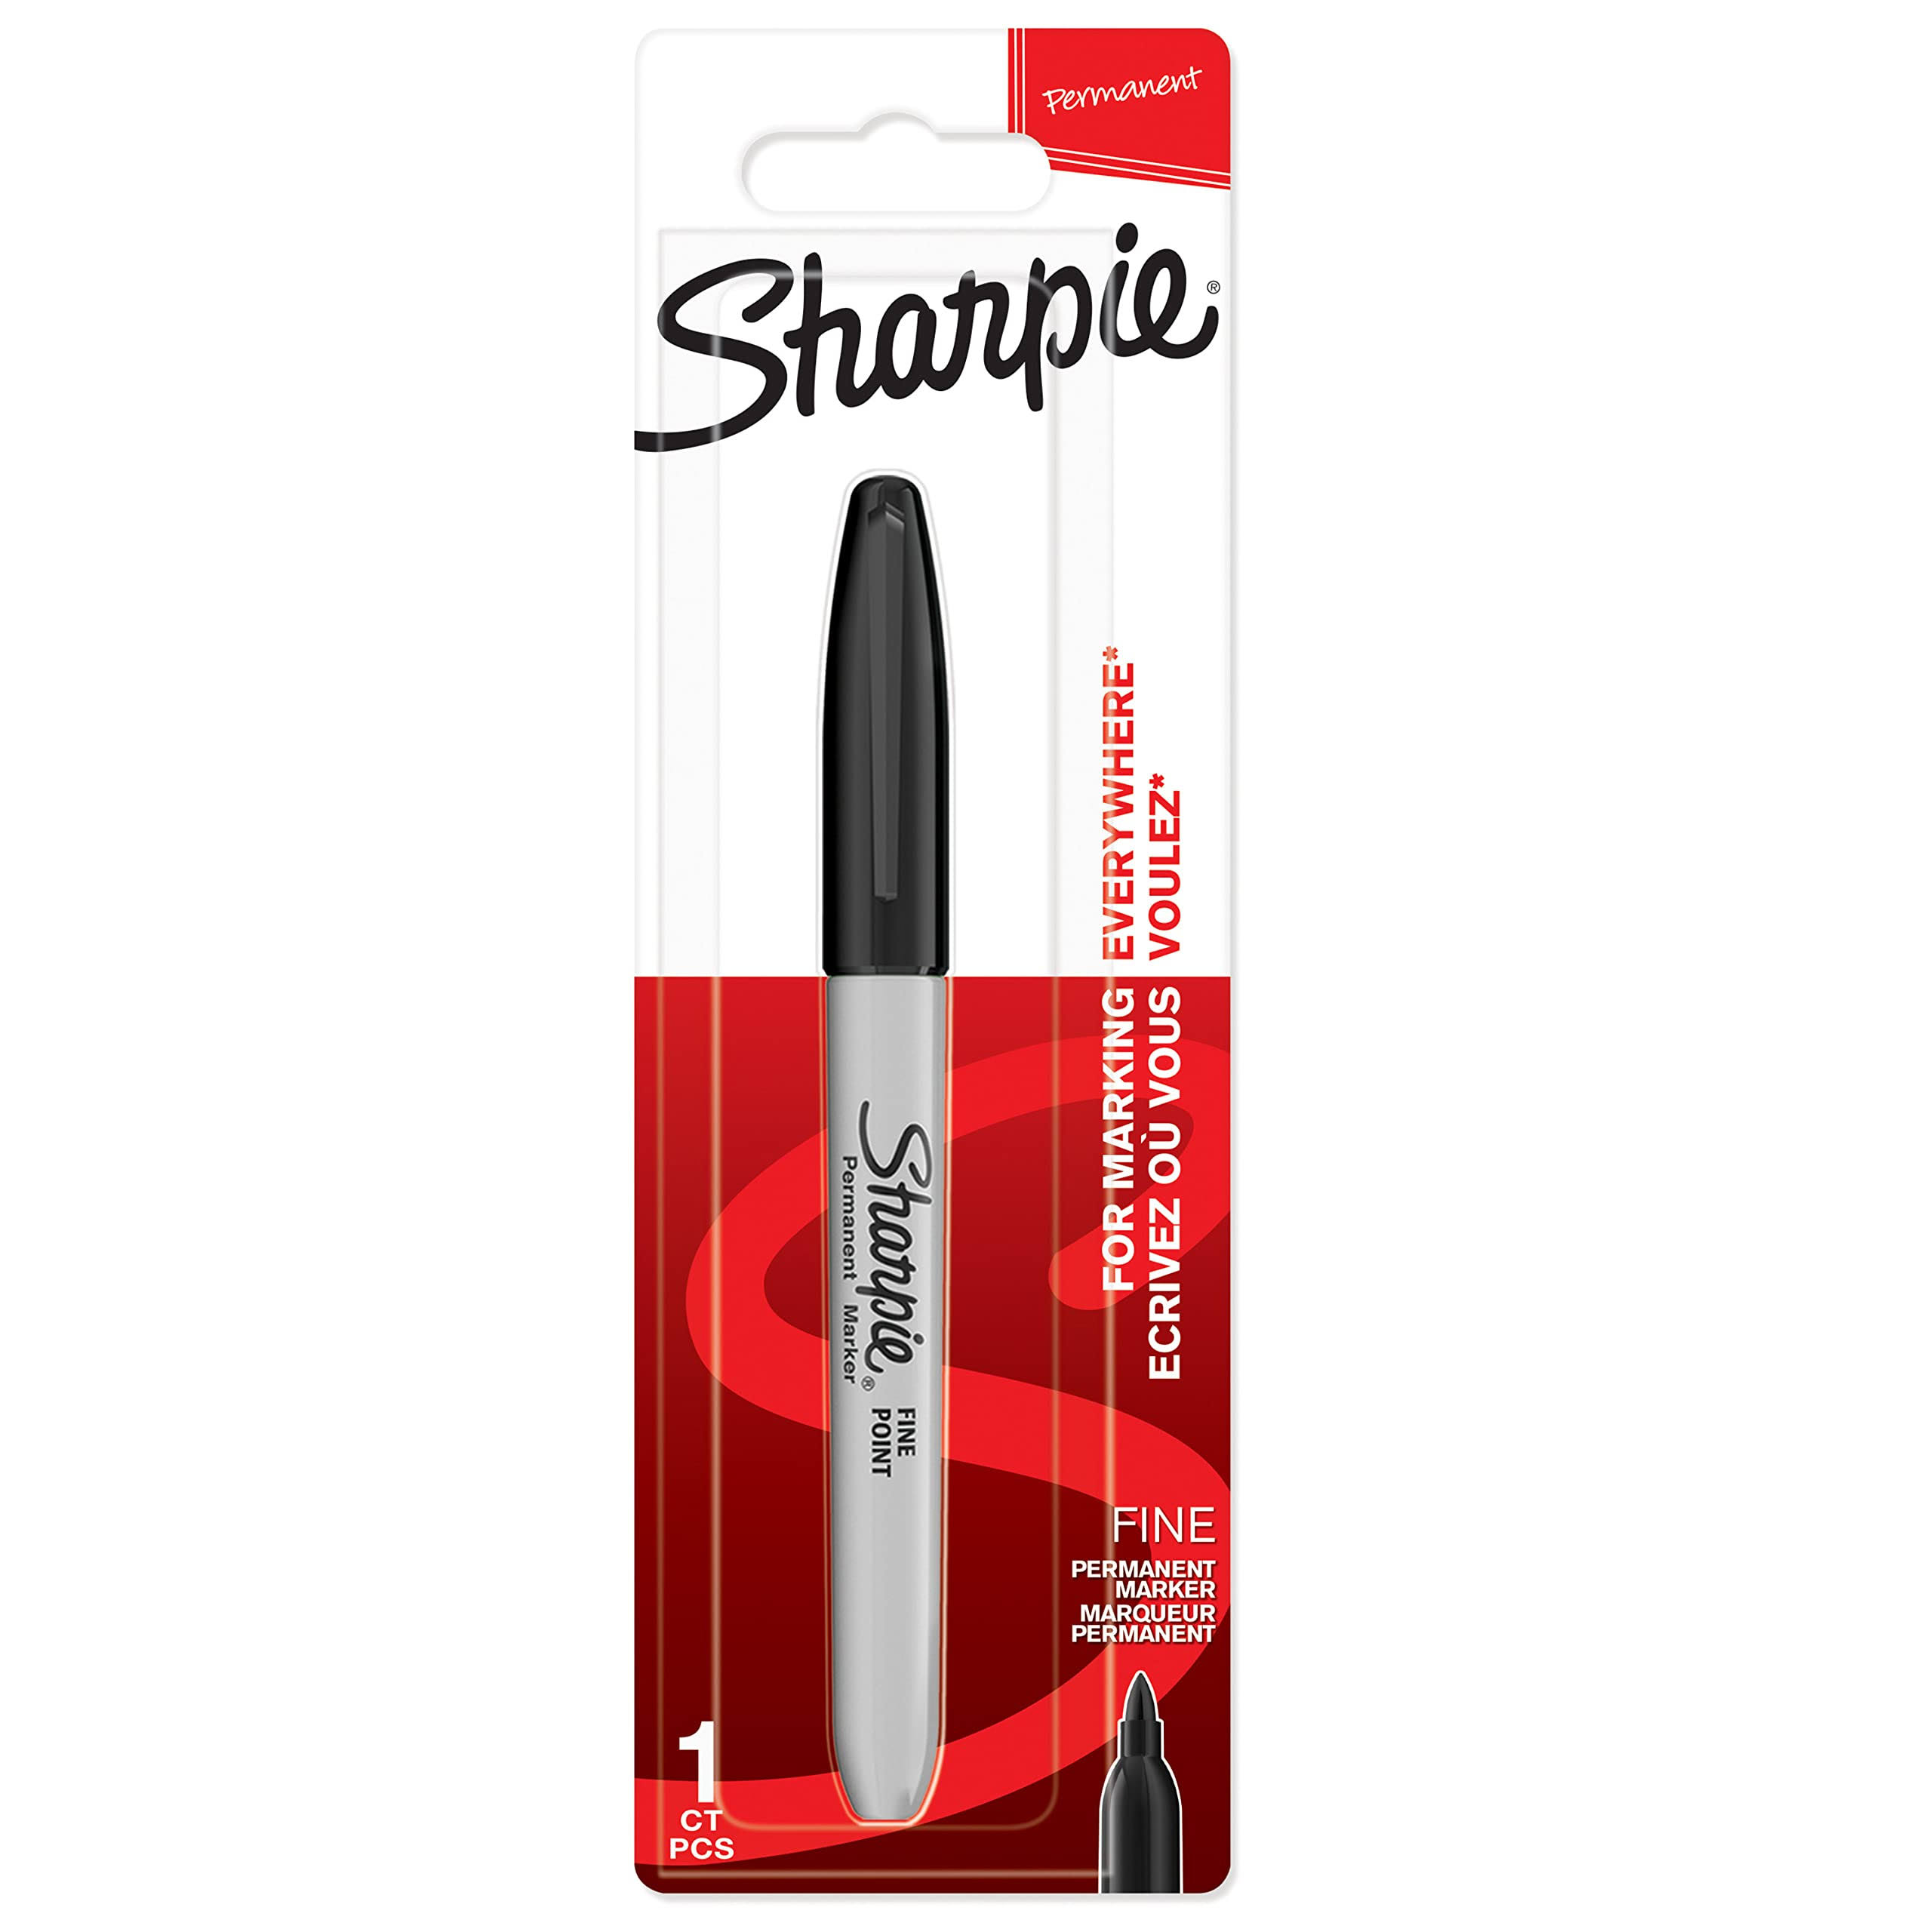 Sharpie Fine Permanent Marker Black